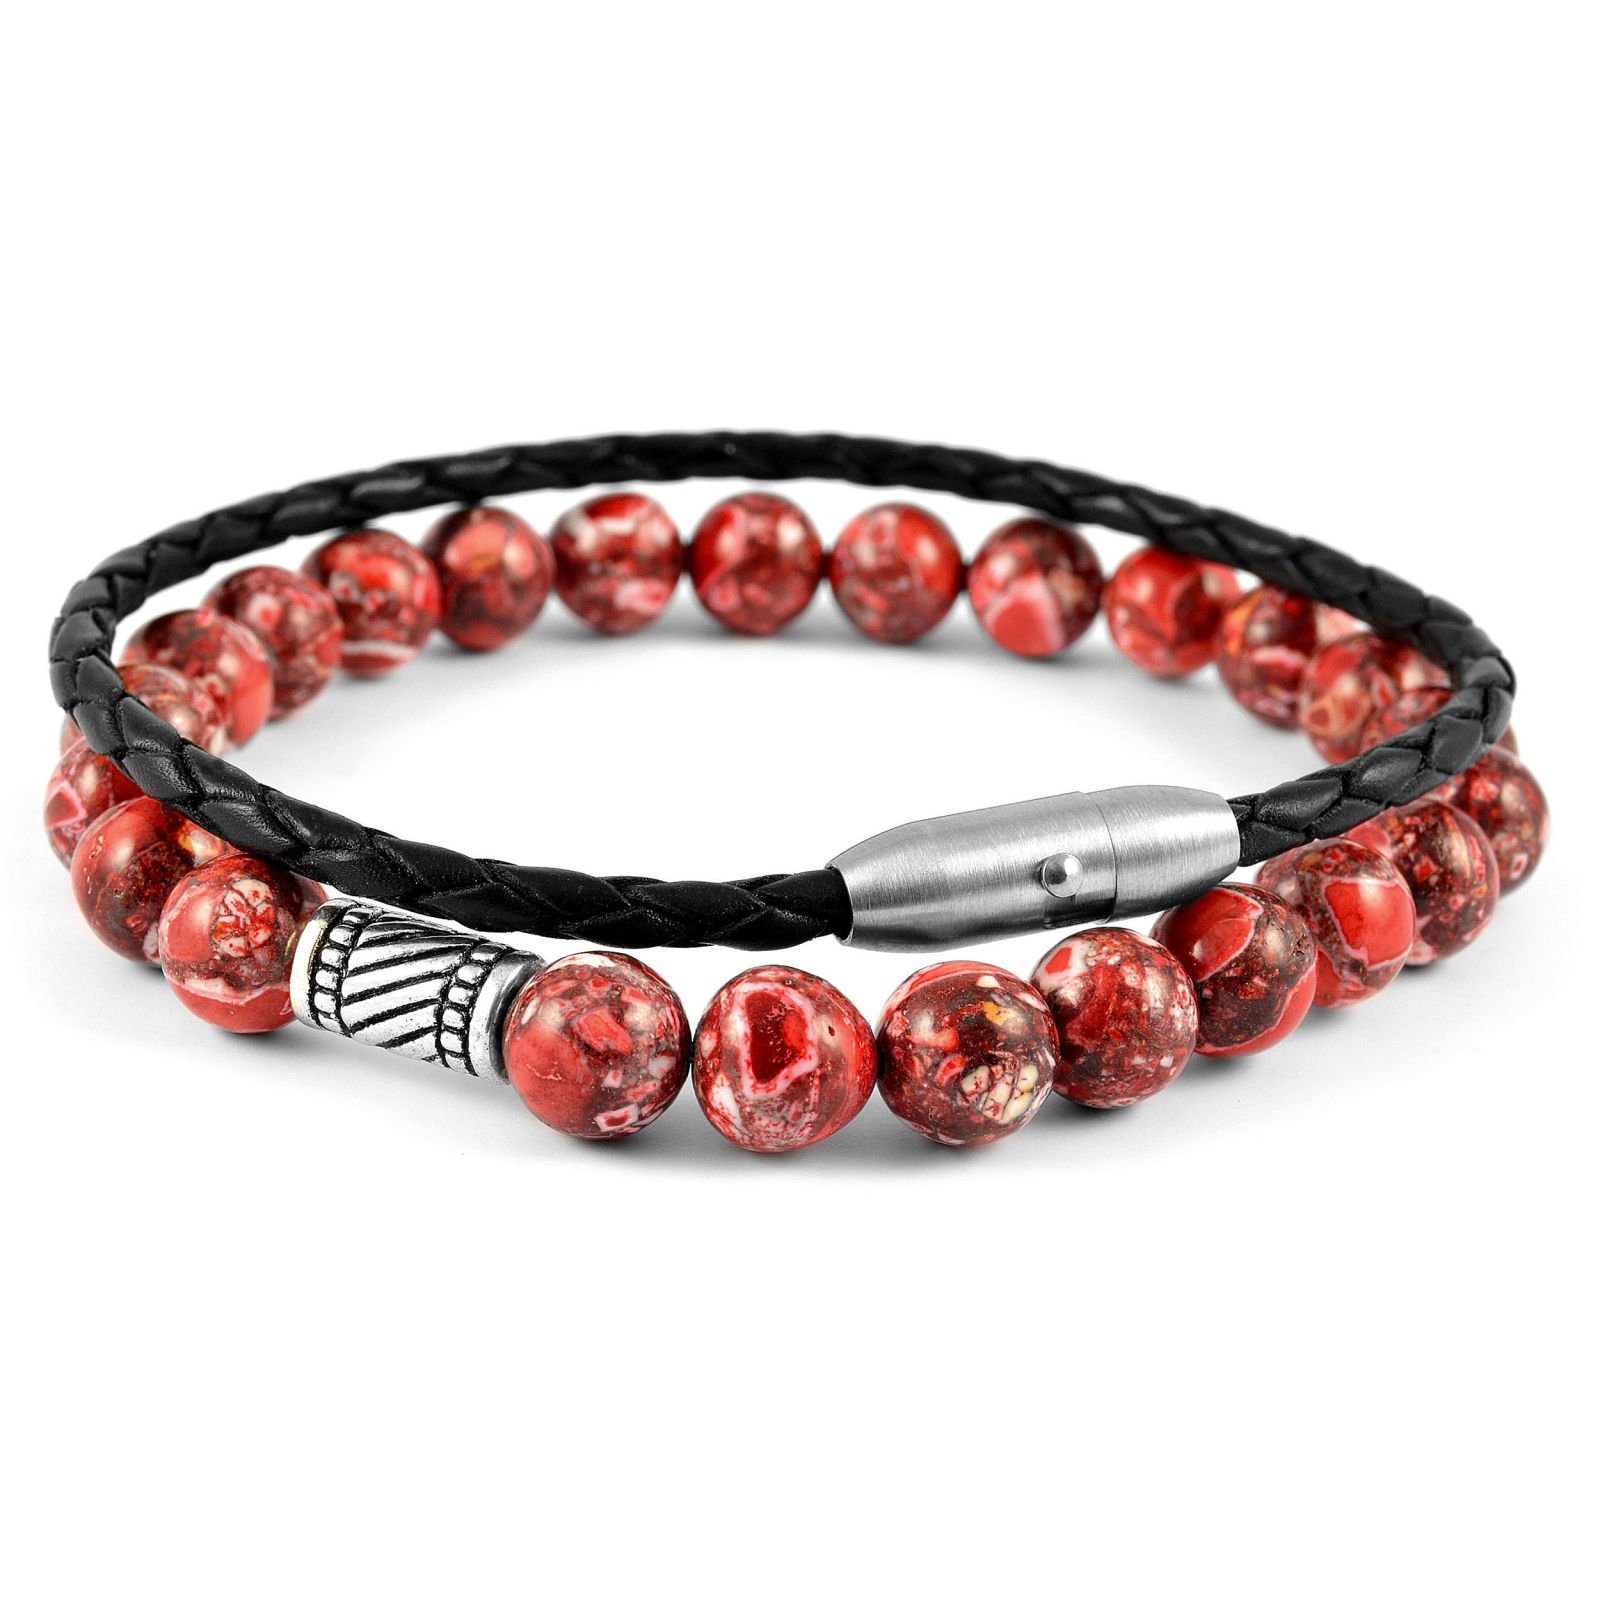 Best Red Charm Bracelets For Men's